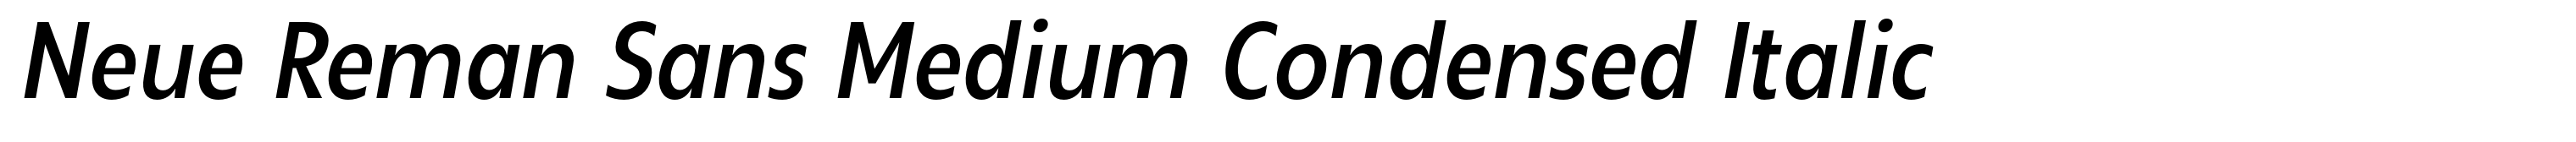 Neue Reman Sans Medium Condensed Italic